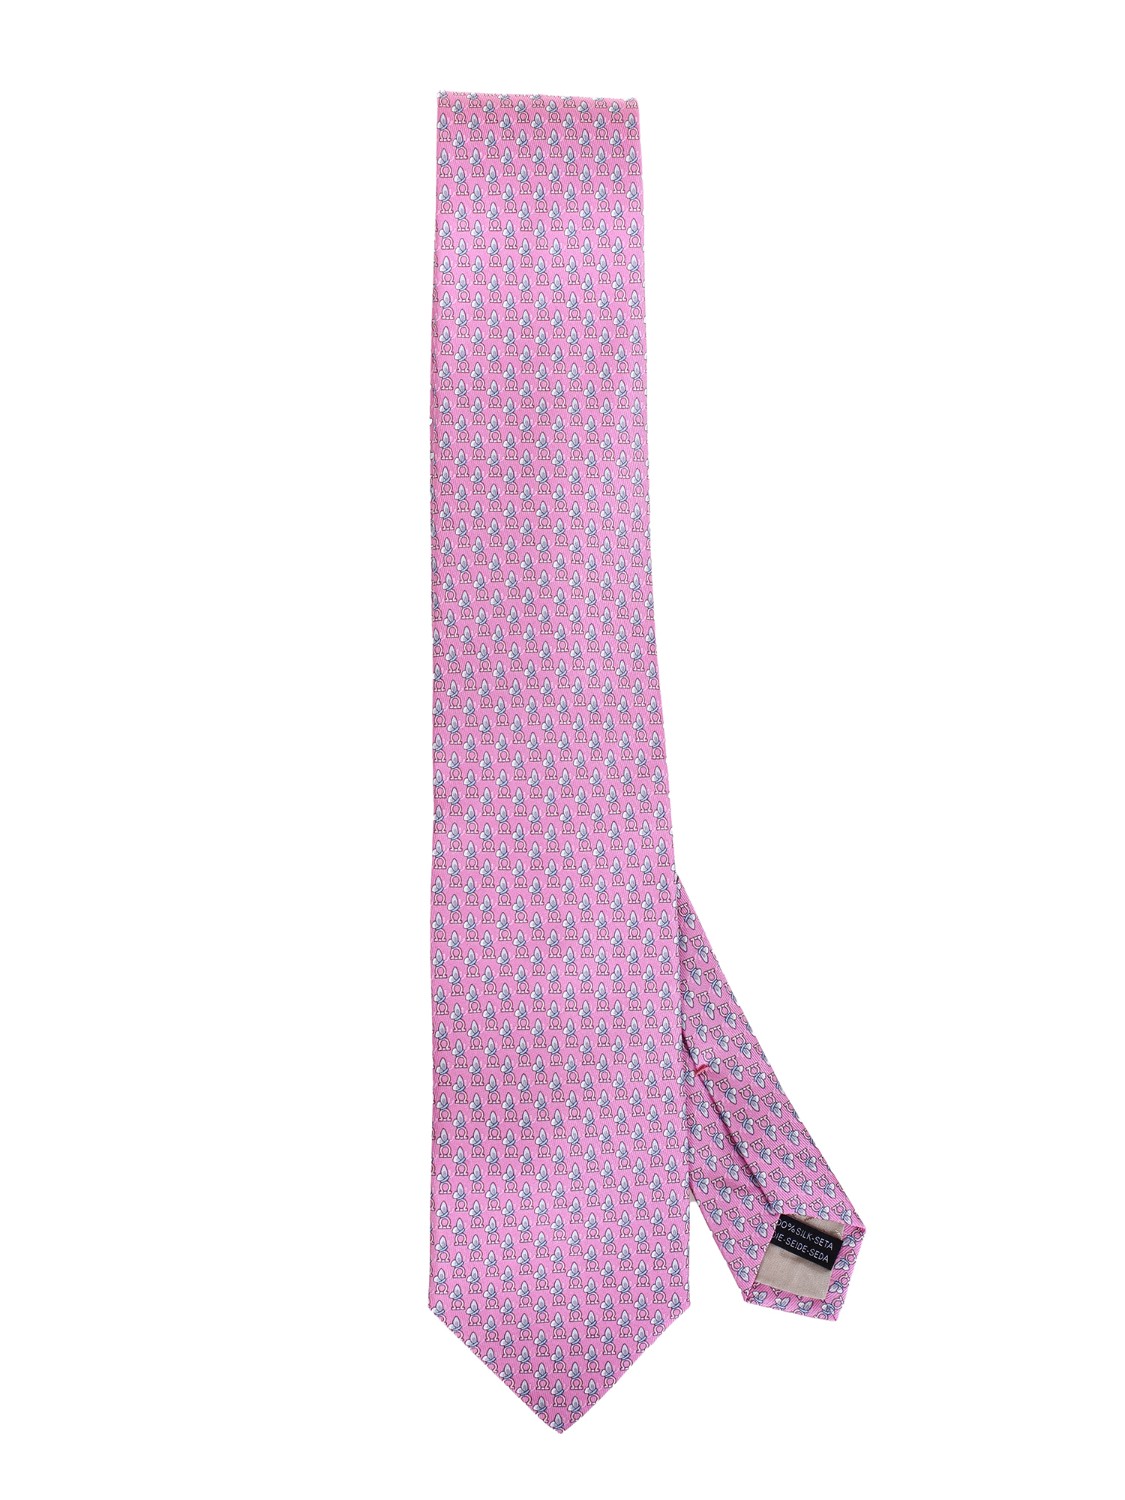 shop SALVATORE FERRAGAMO  Cravatta: Salvatore Ferragamo cravatta in jacquard di seta.
Decorata da un pattern di mini farfalle.
Fondo a 7 cm.
Composizione: 100% seta.
Made in Italy.. 350489 4 OLGA-005 749634 number 4003834